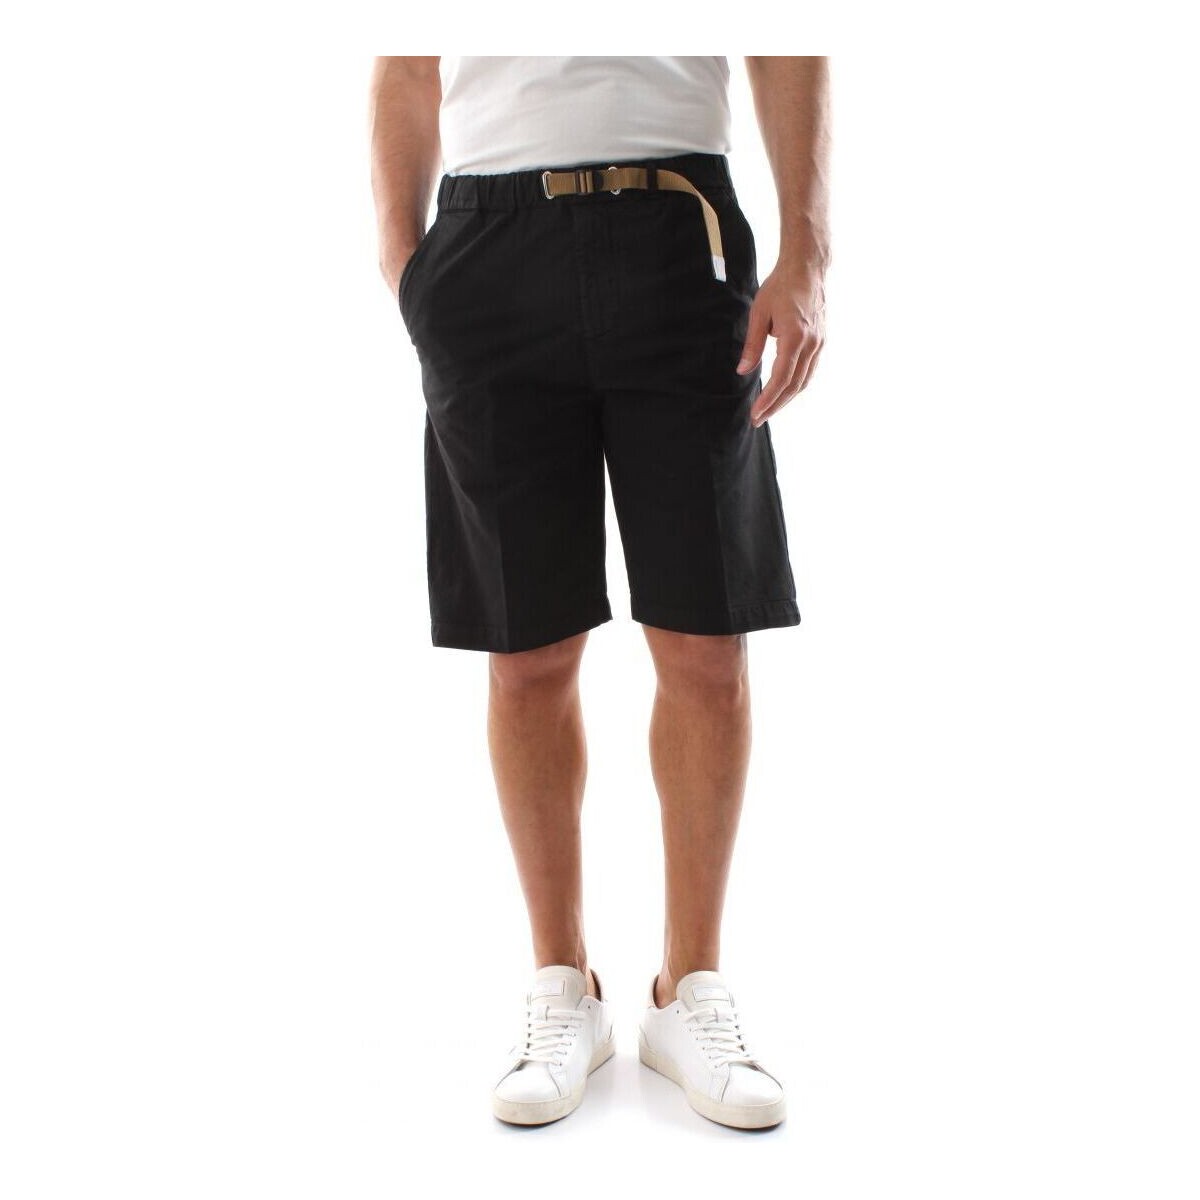 Kleidung Herren Shorts / Bermudas White Sand 23SU51 83-999 Schwarz